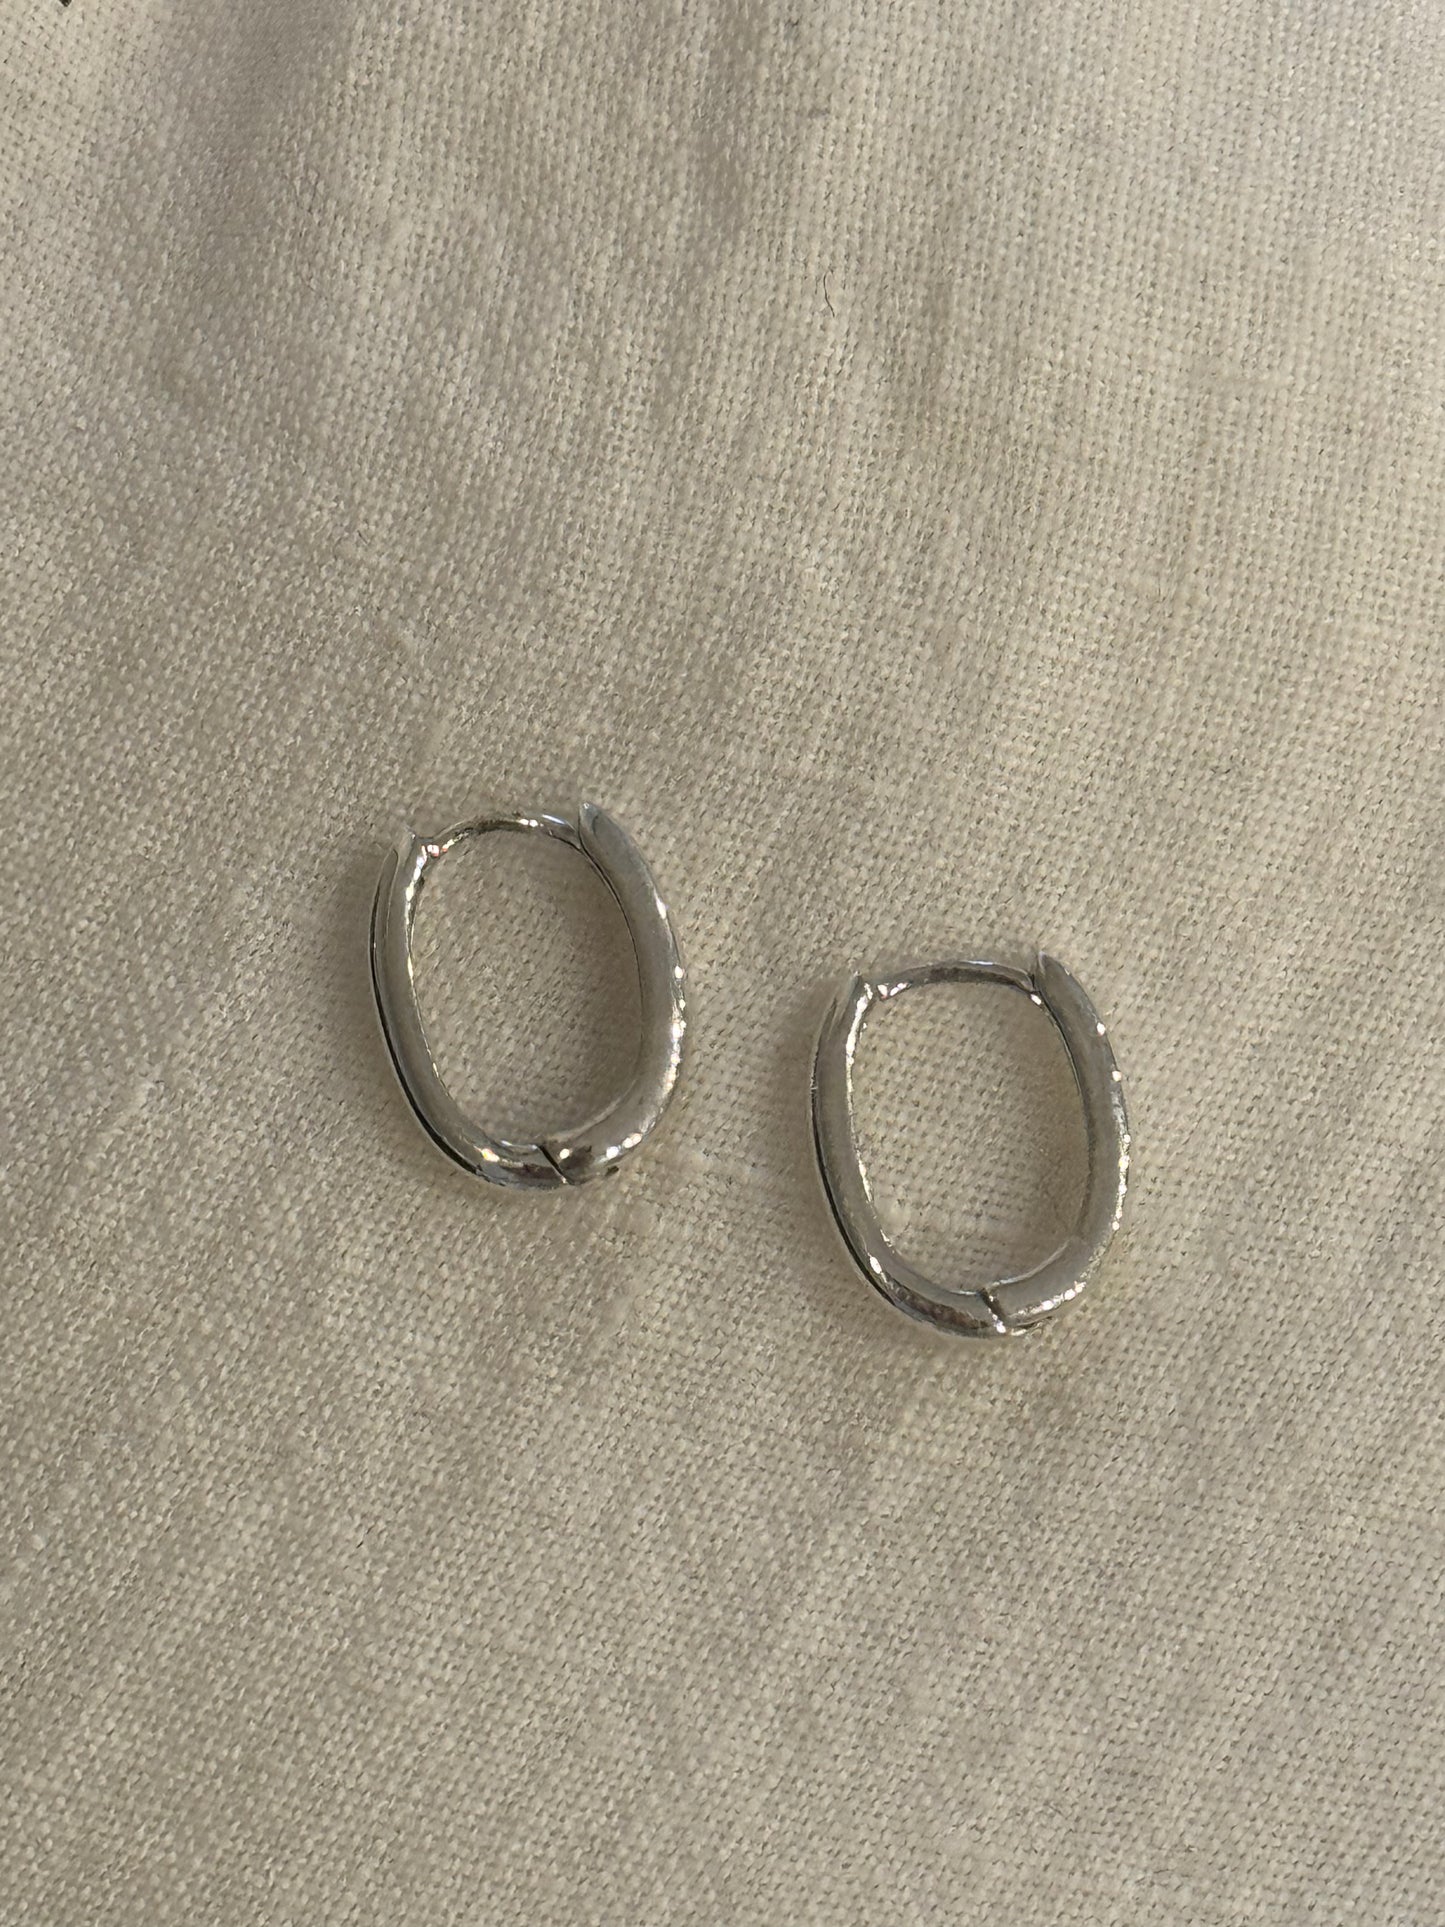 Silver Earrings Plain Huggies Earring